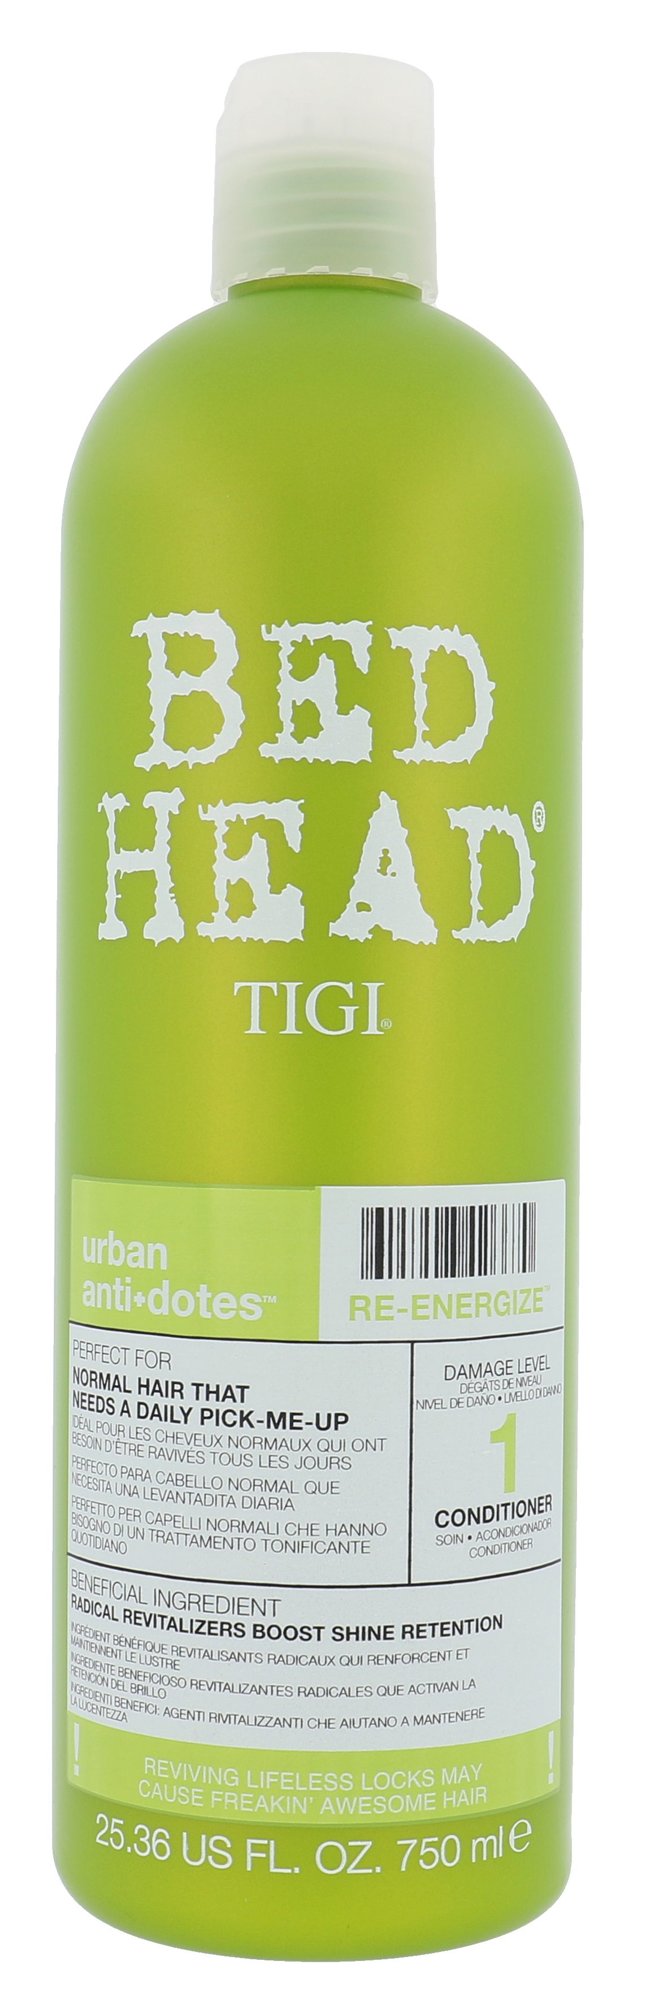 Tigi Bed Head Re-Energize Conditioner